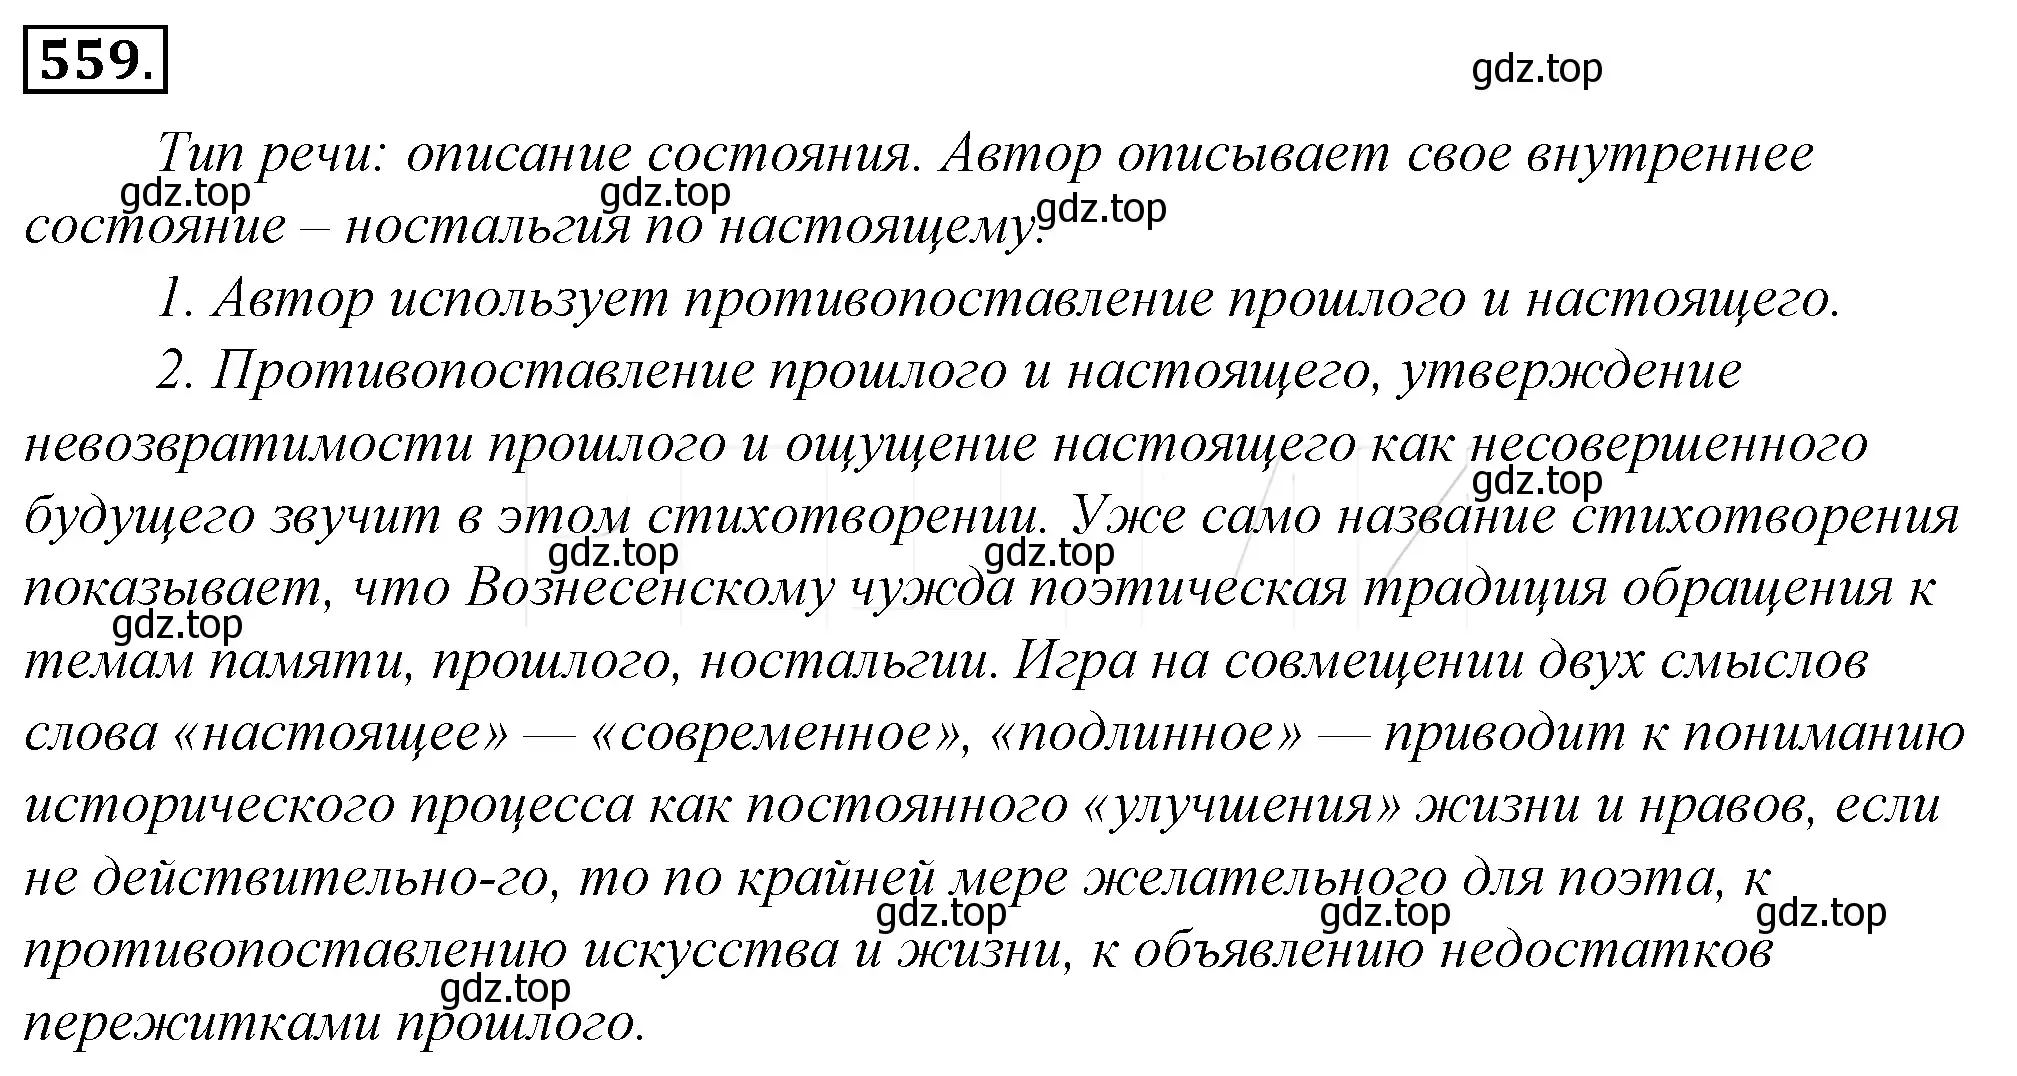 Решение 4. номер 235 (страница 321) гдз по русскому языку 10-11 класс Гольцова, Шамшин, учебник 2 часть